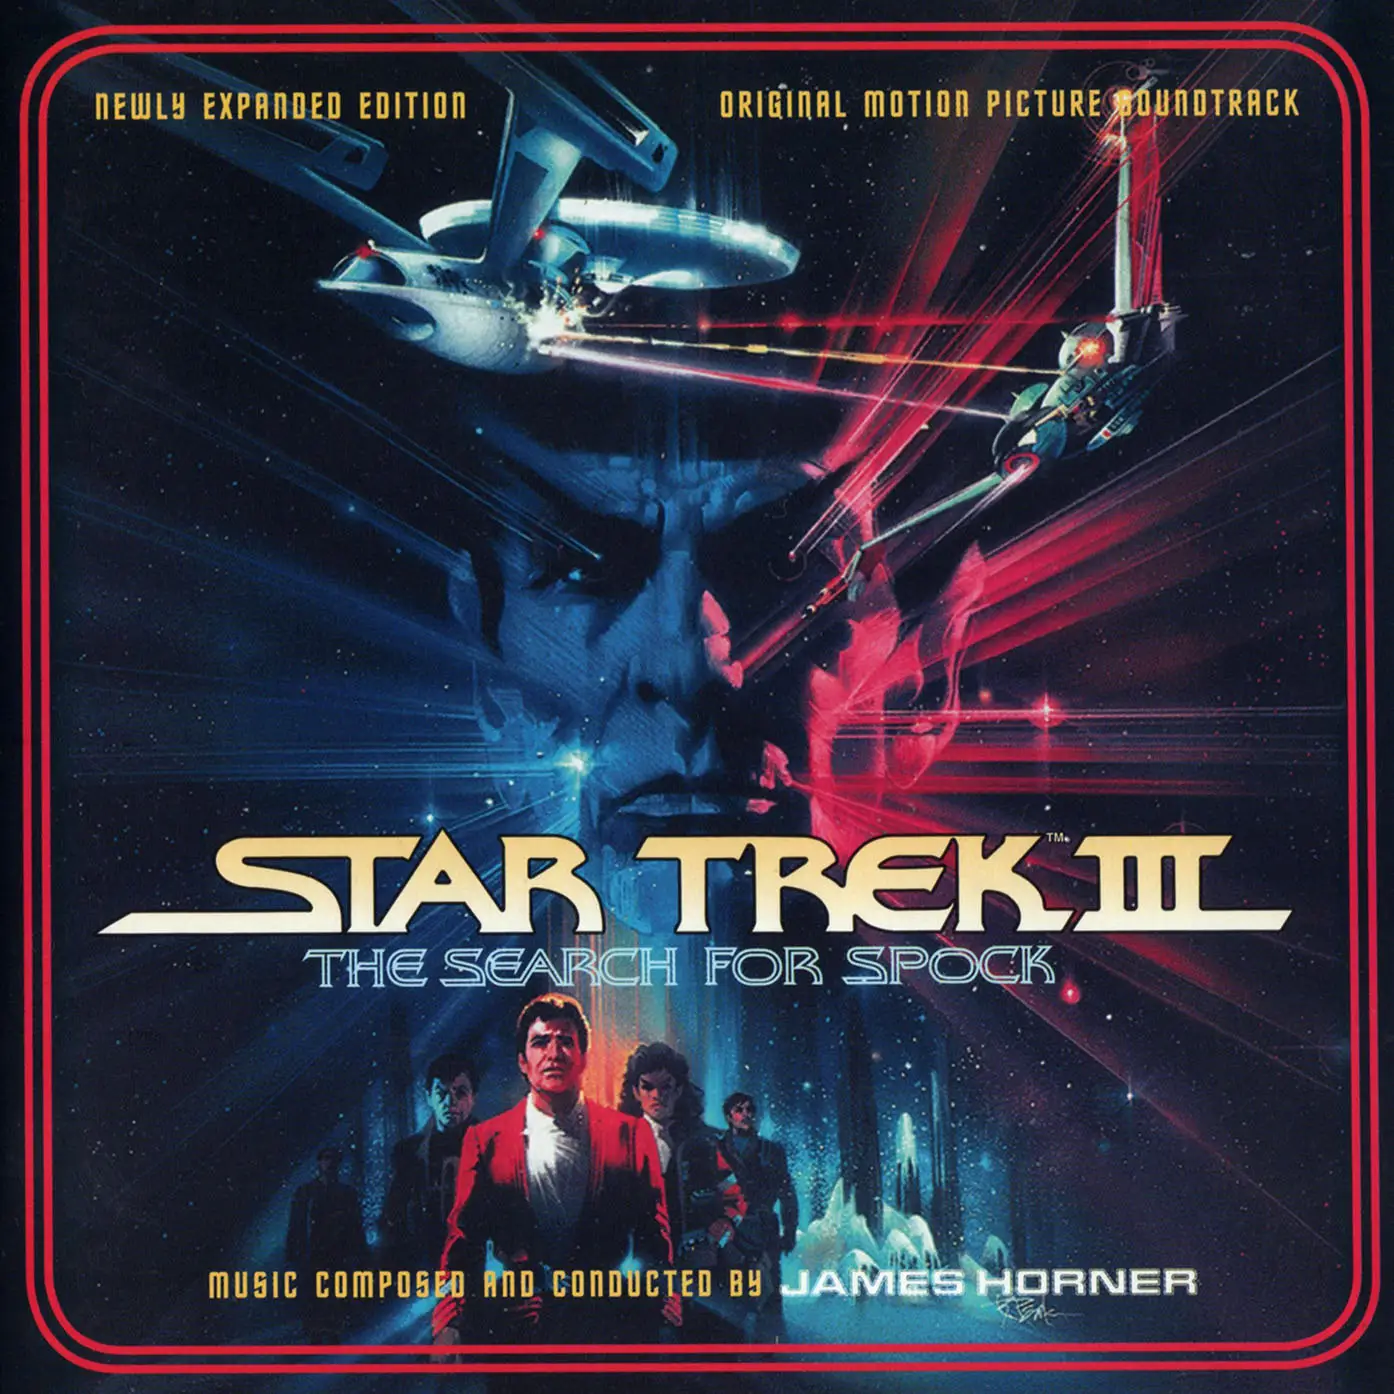 star trek iii soundtrack review